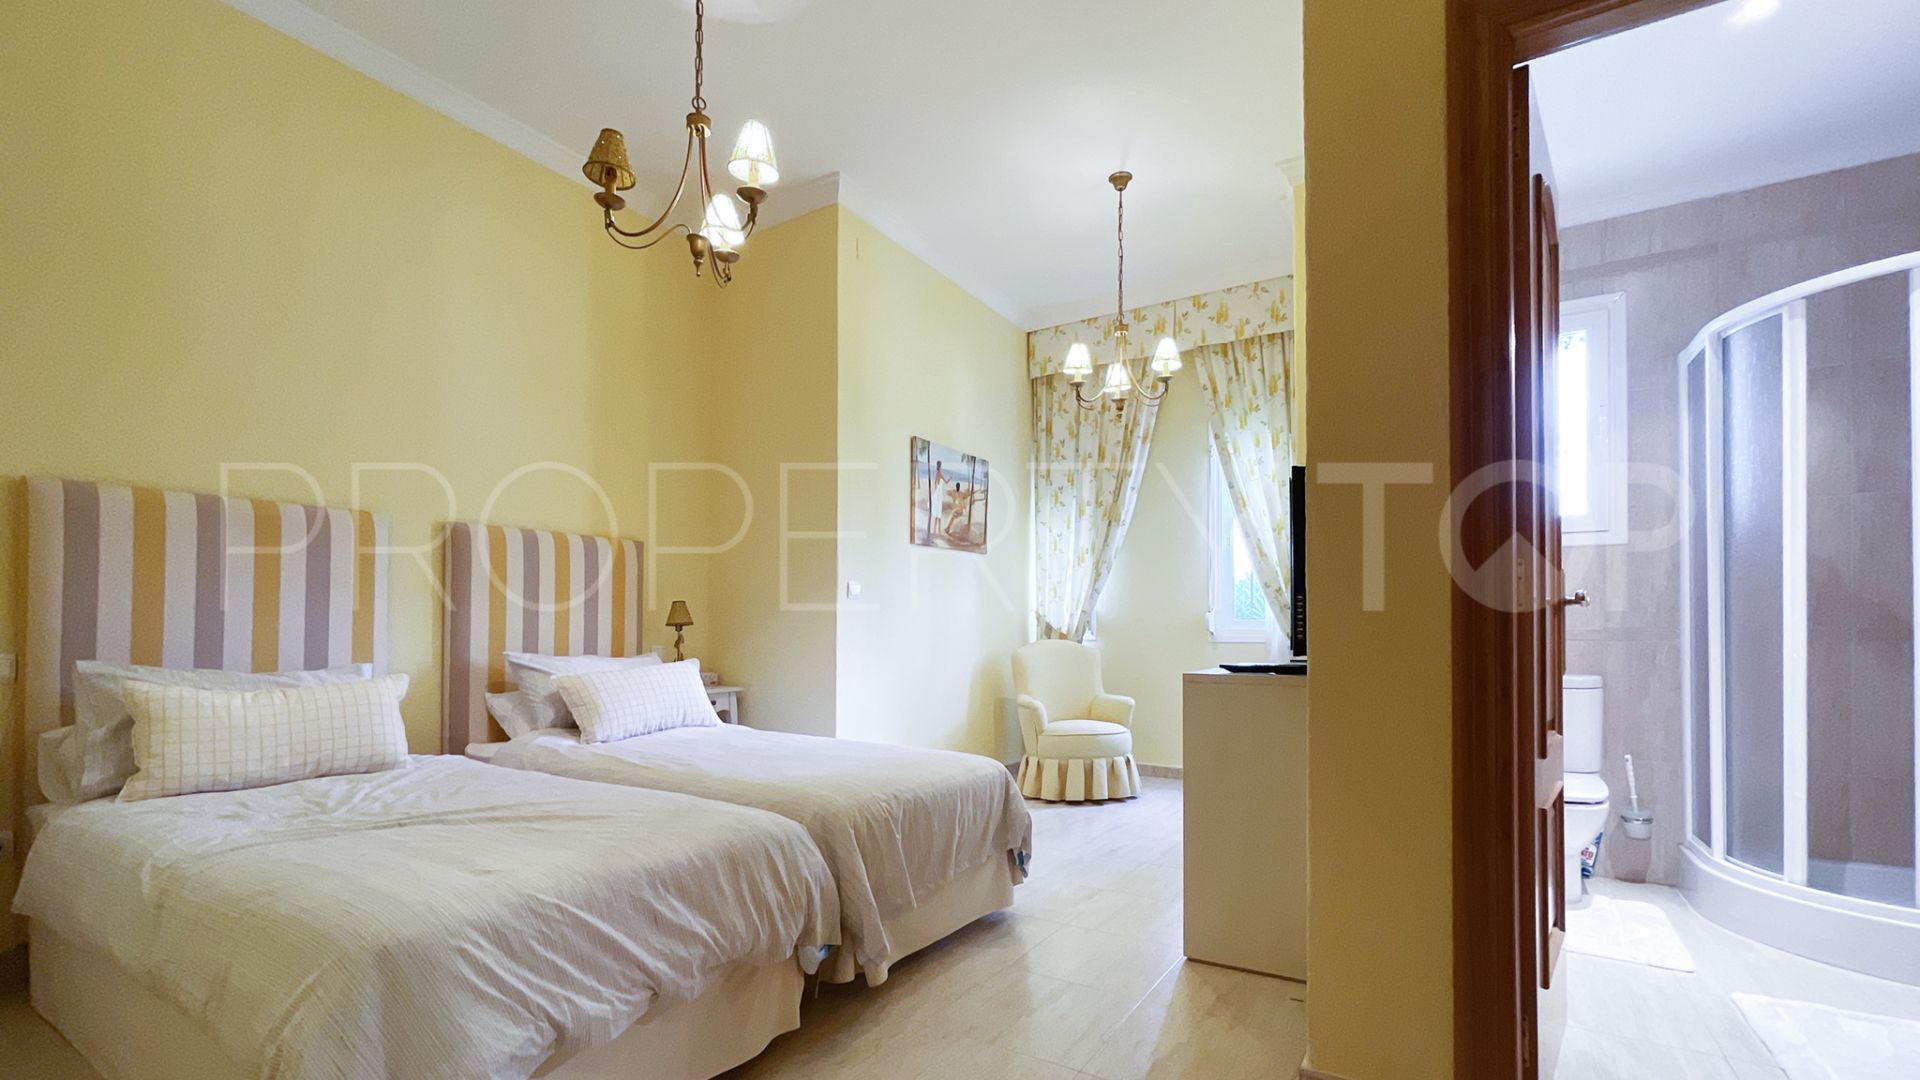 For sale 5 bedrooms villa in La Alqueria